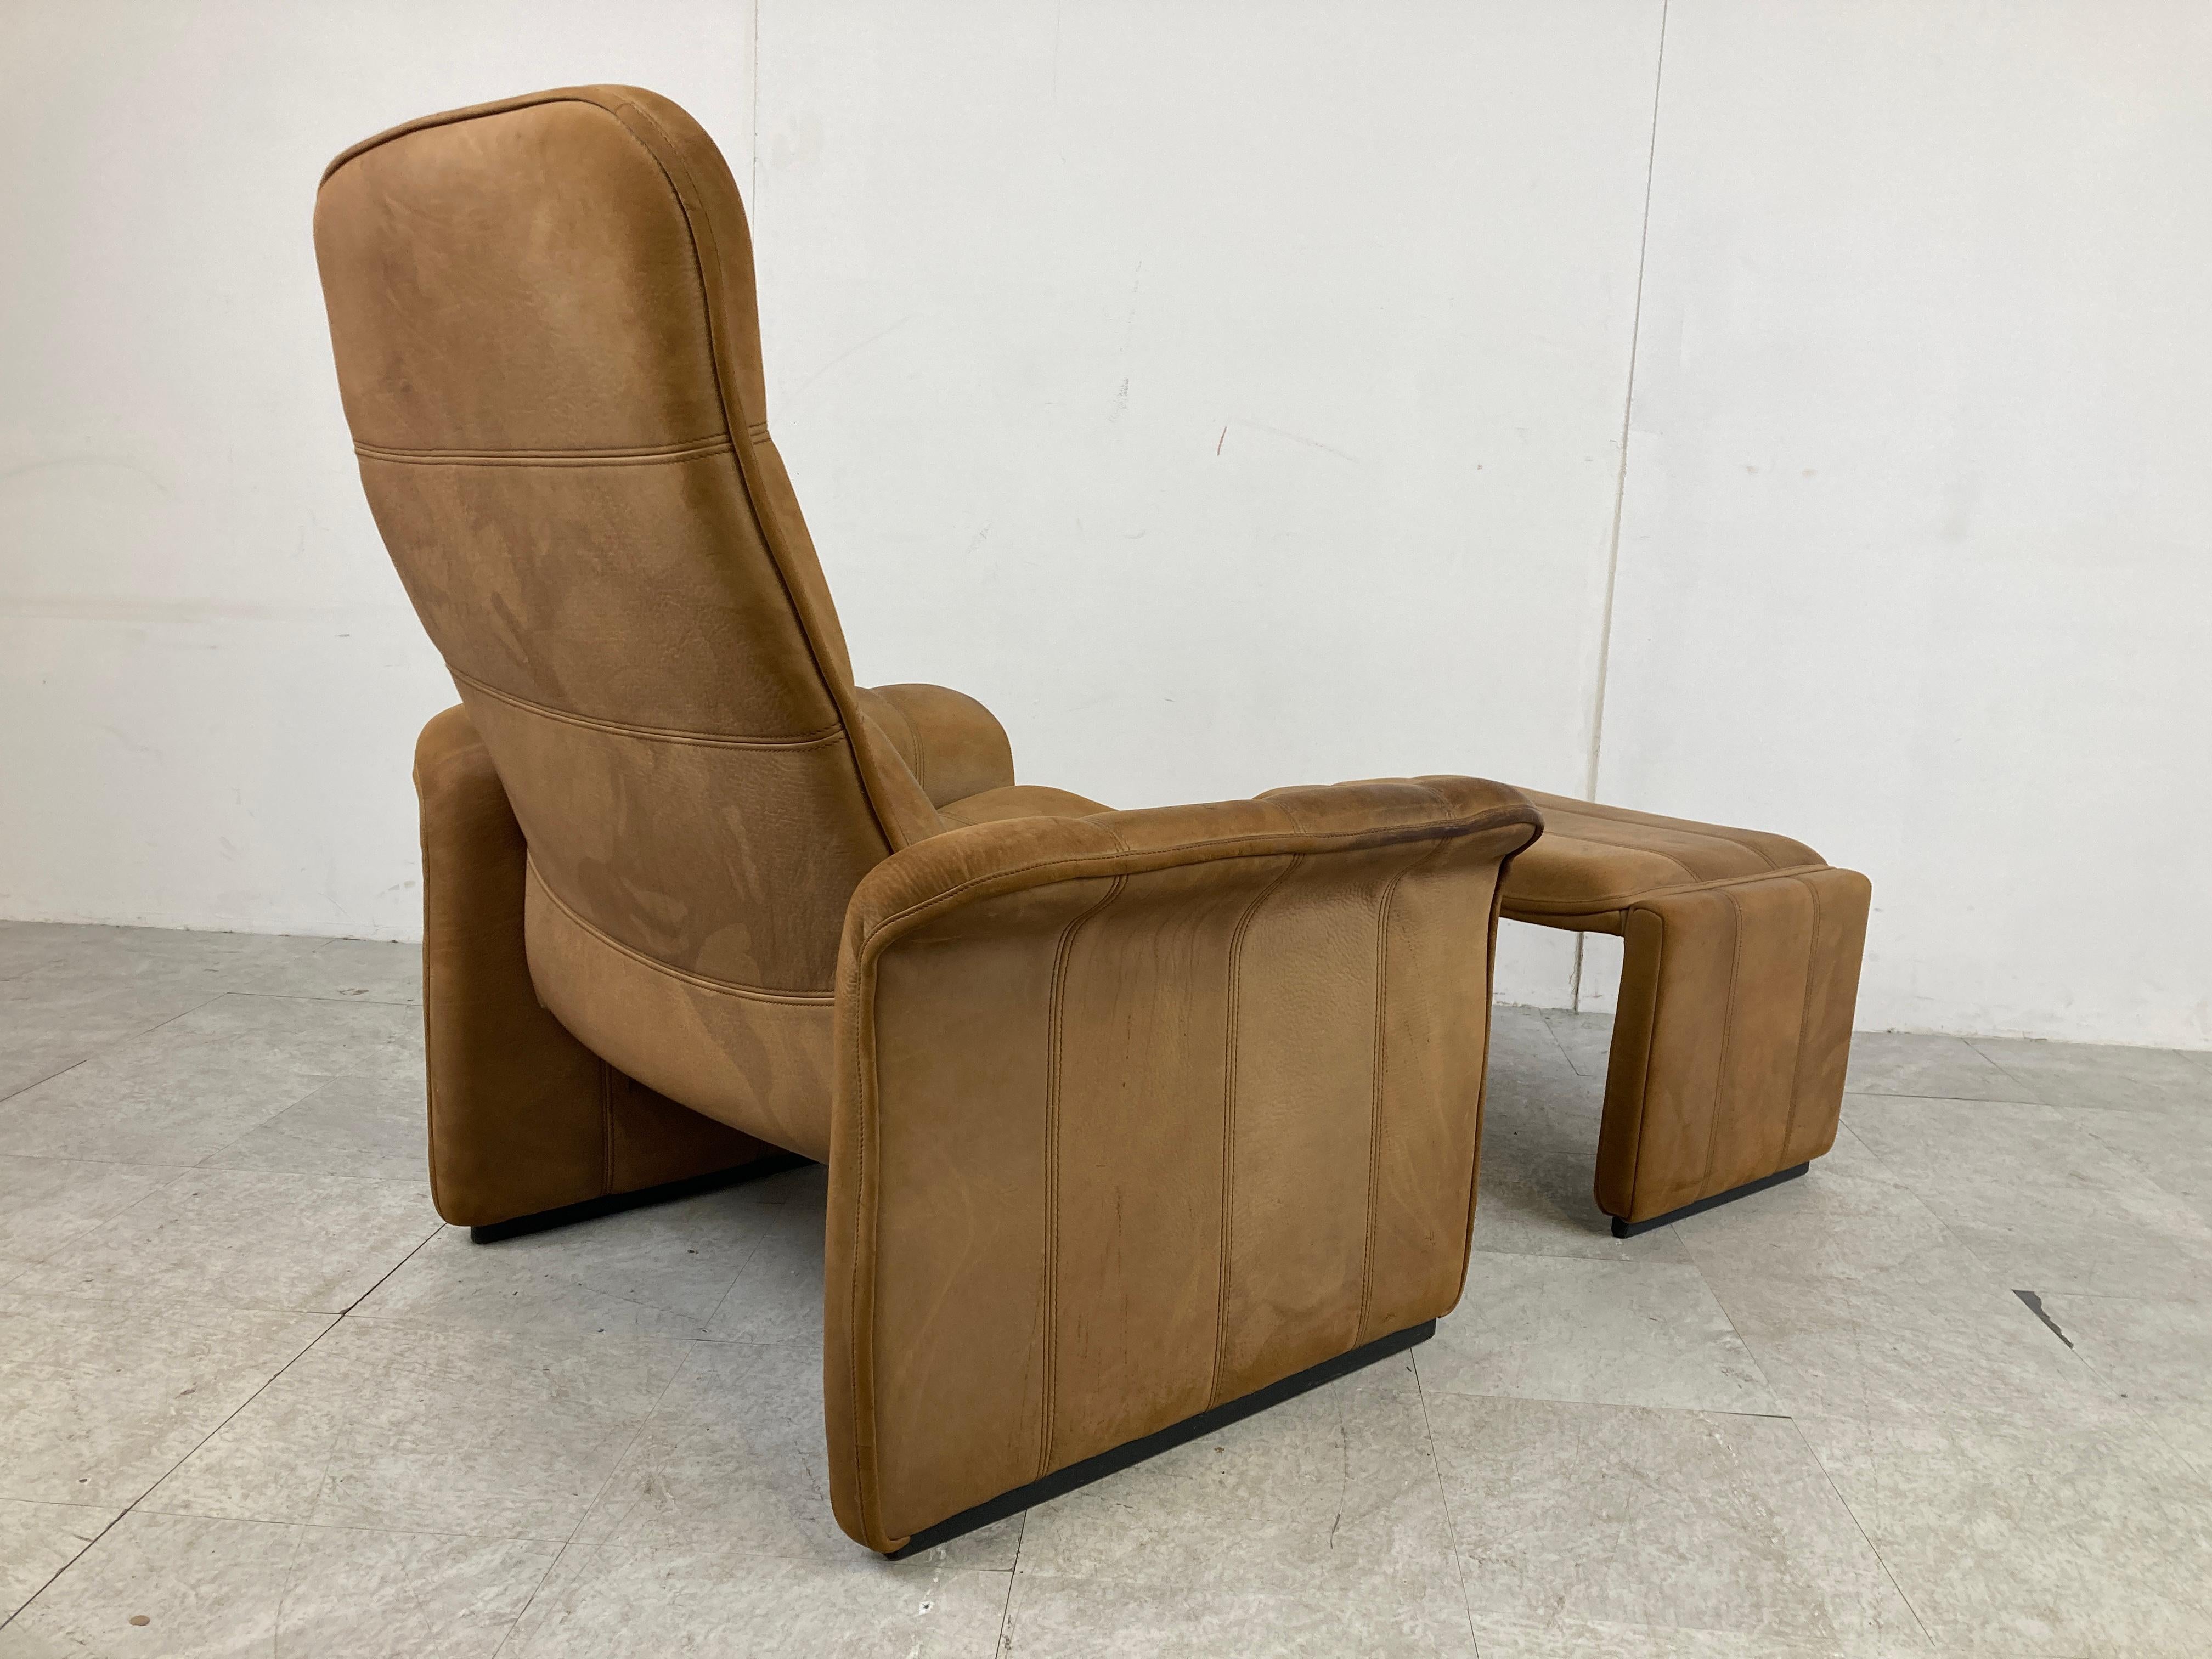 Mid-Century Modern Ledersessel Modell DS50 mit Ottomane von Desede.

Dieser schöne Sessel aus Büffelleder ist reine Qualität und hat eine verstellbare Rückenlehne.

Guter Zustand.

1970er Jahre - Schweiz

Abmessungen:
H 37.01 in. x B 33.86